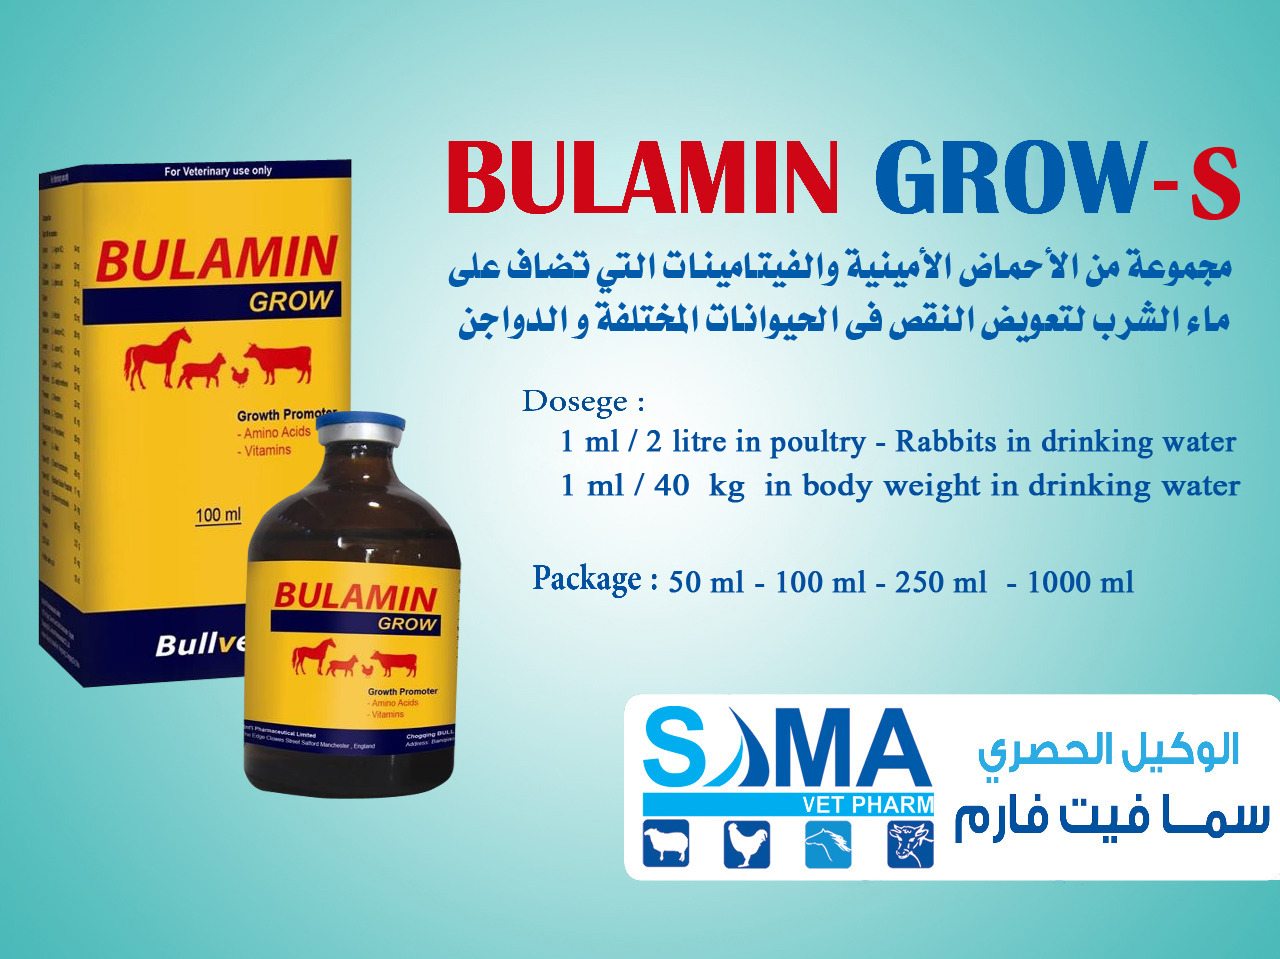 BULAMIN GROW-S